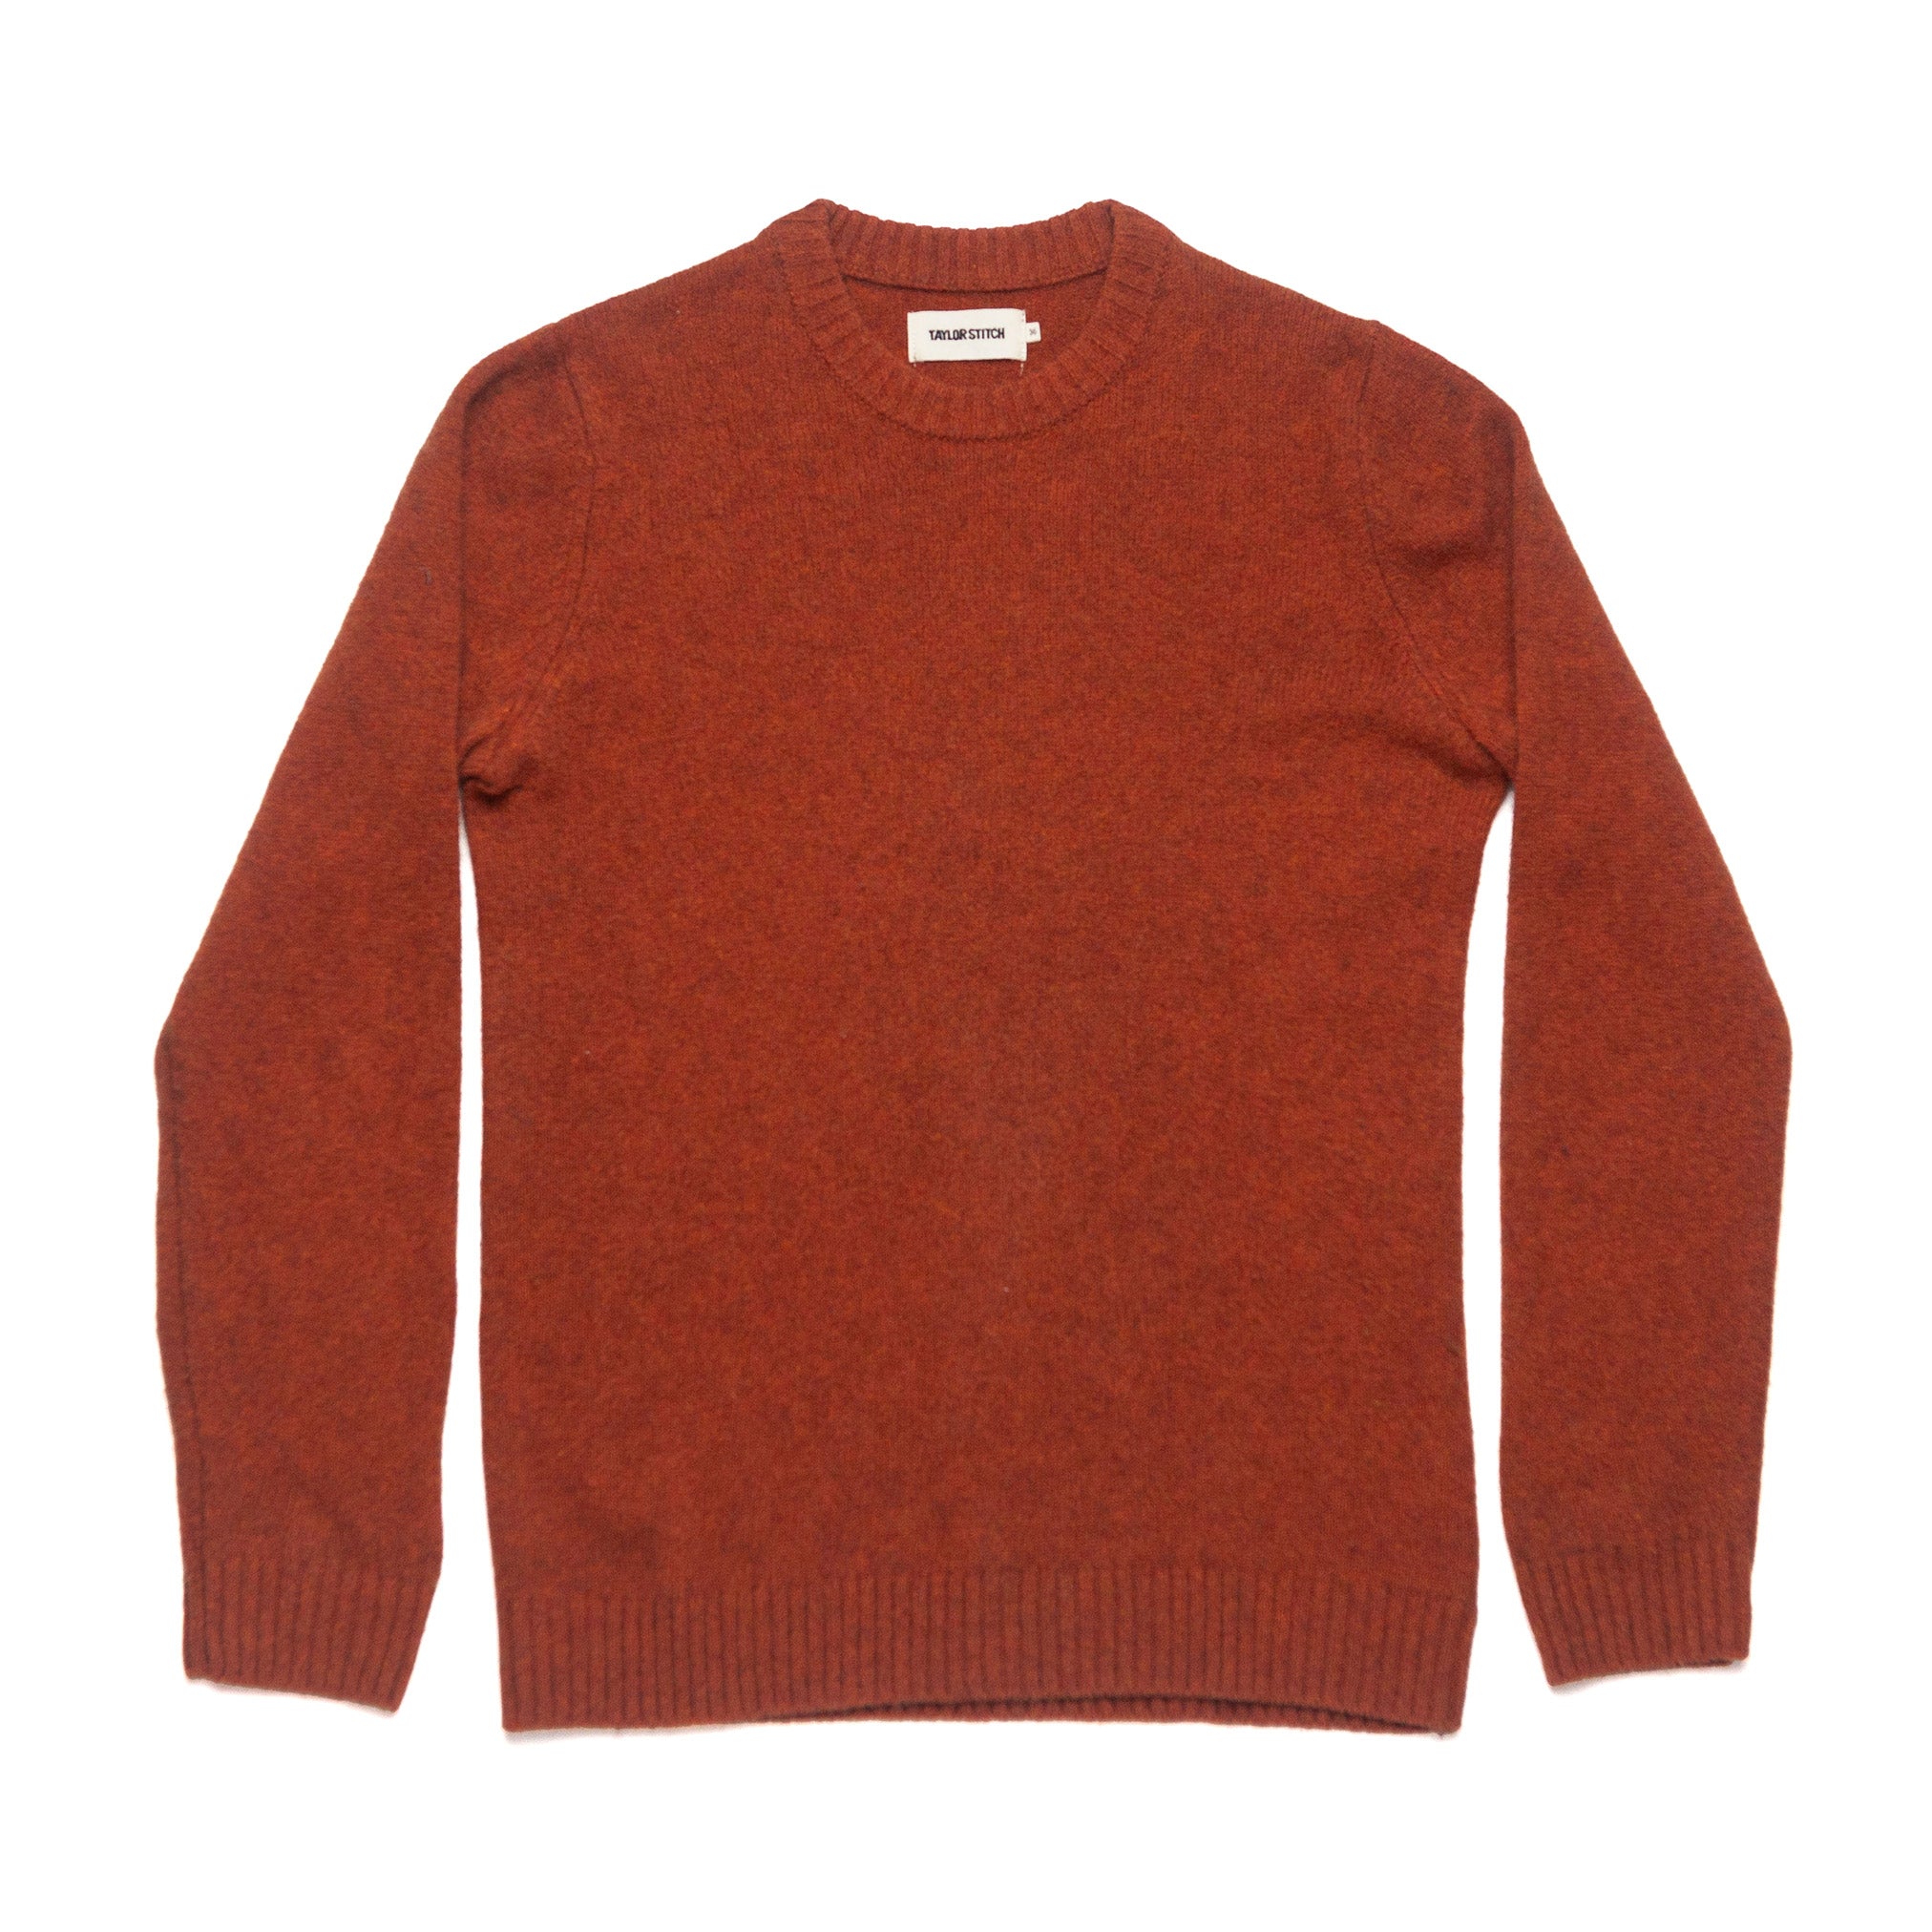 The Lodge Sweater in Rust - XS